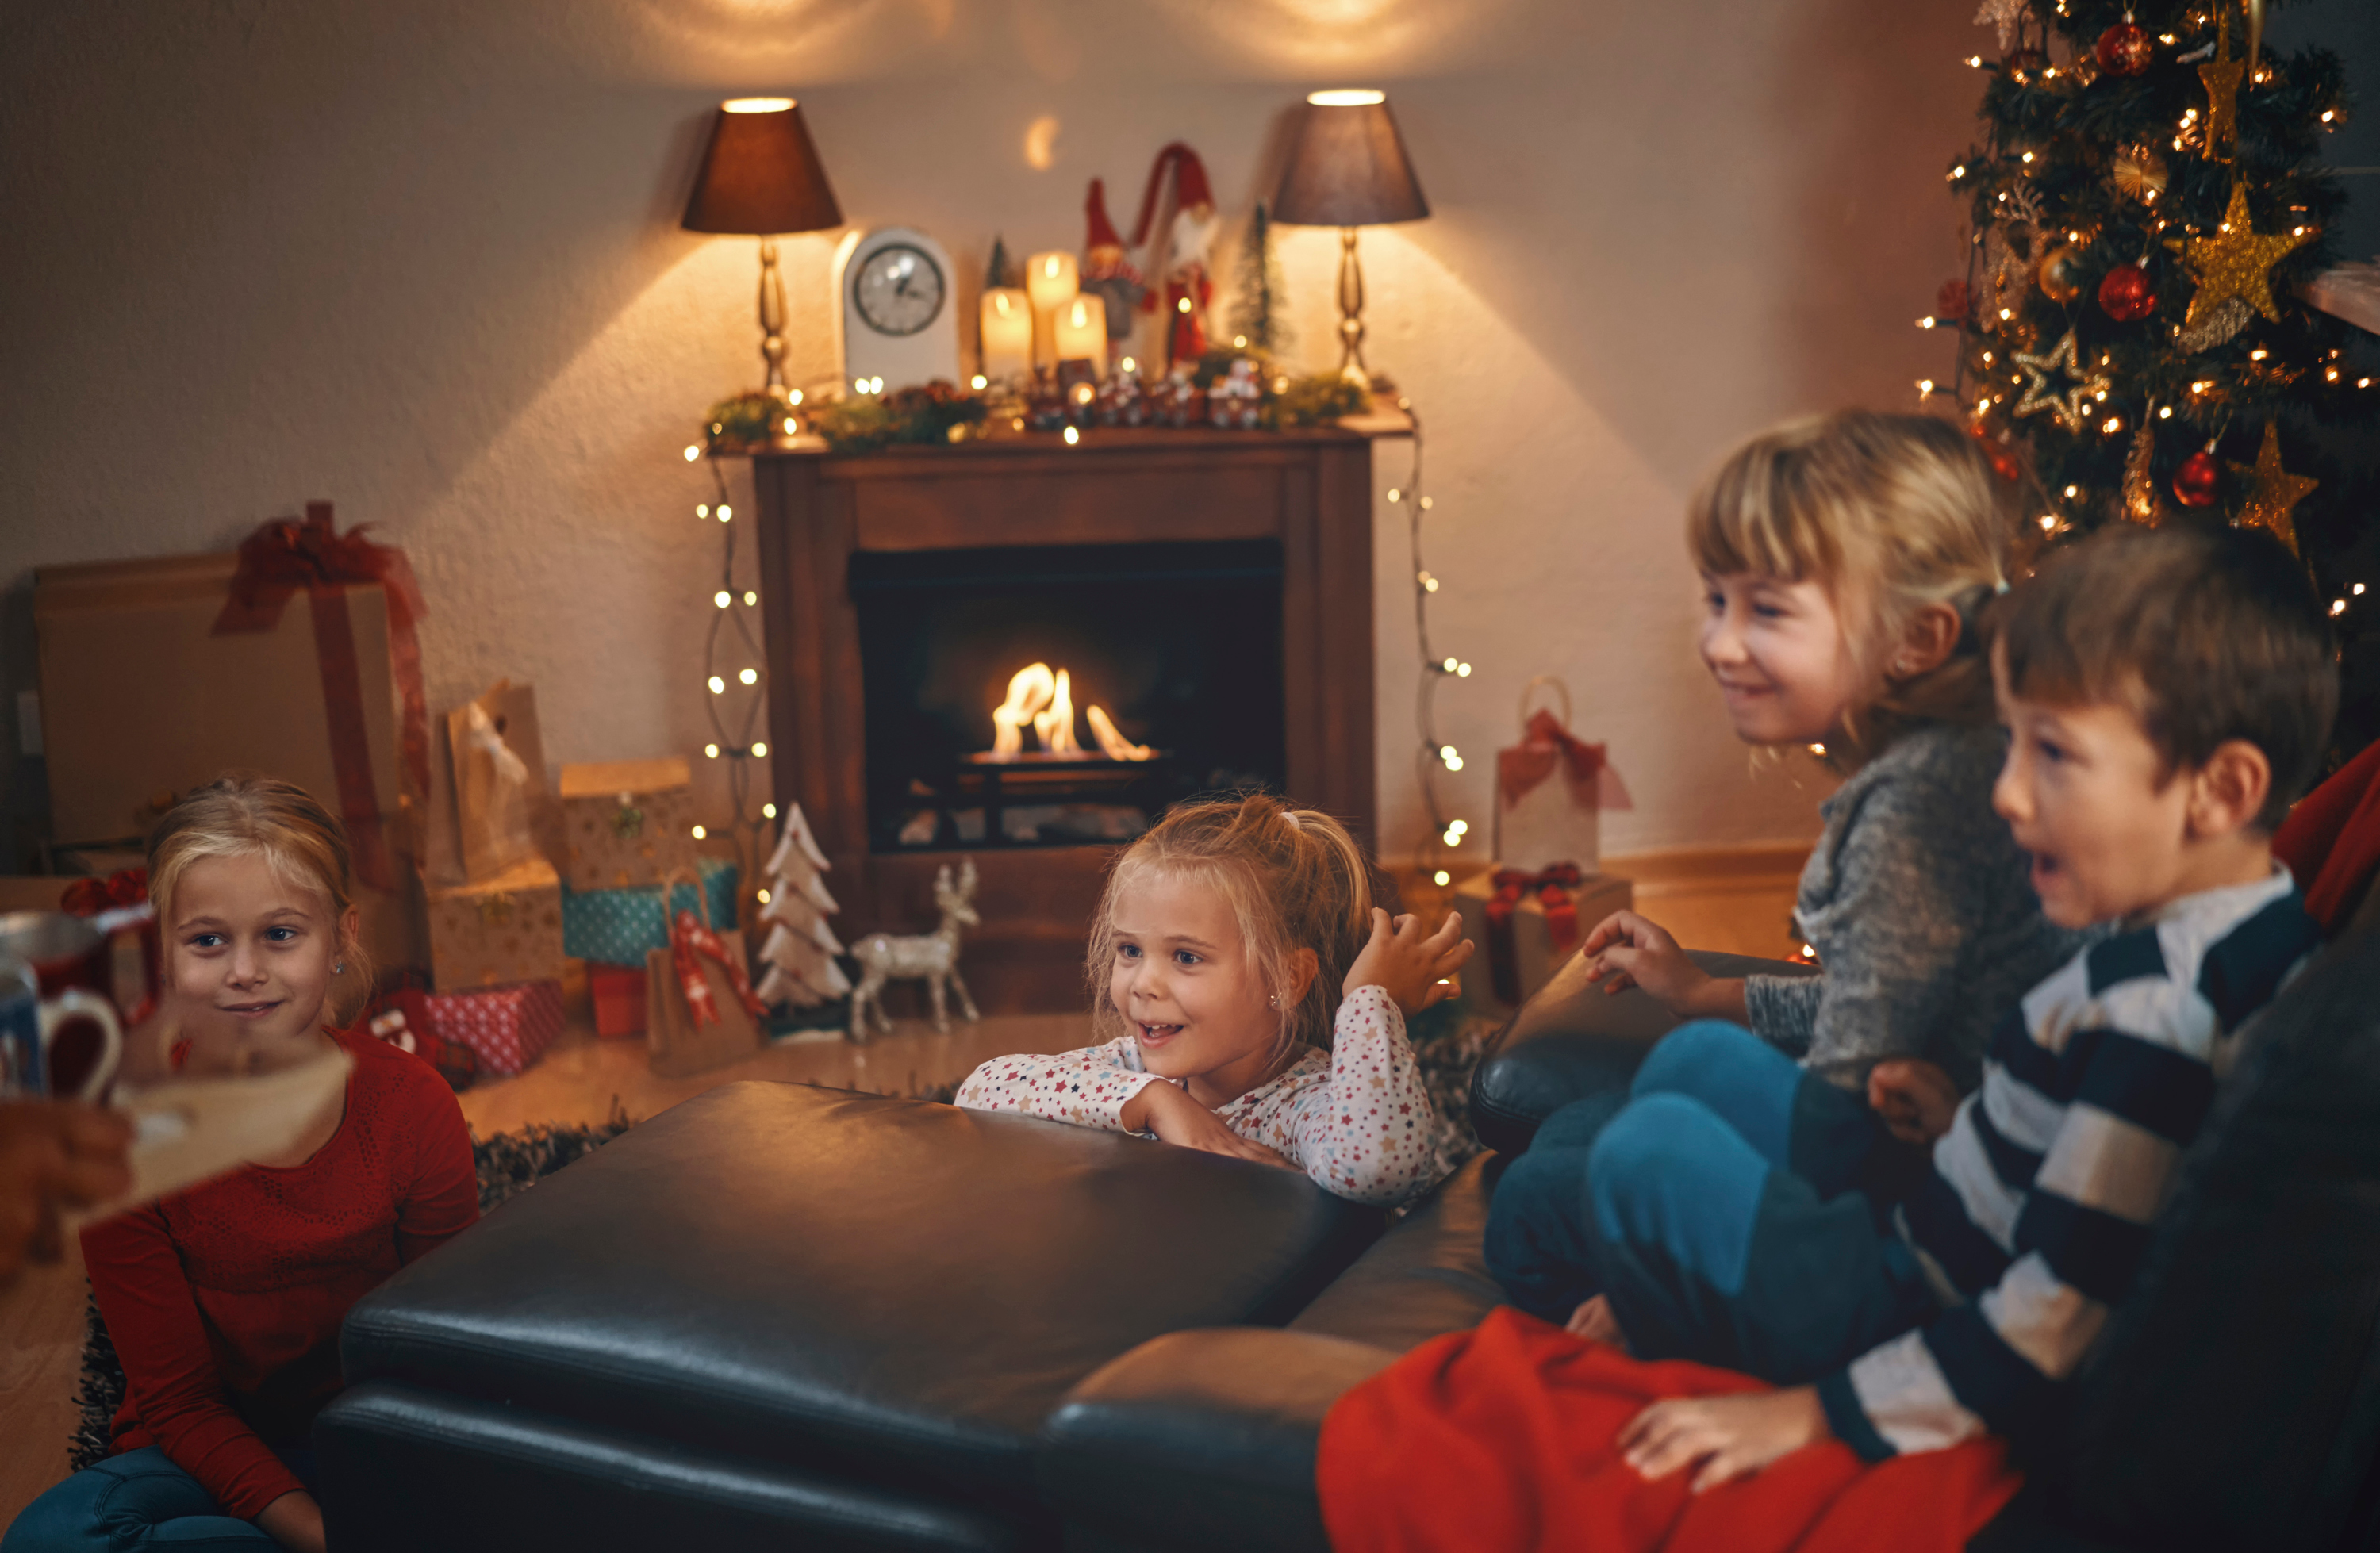  Kinder genießen die Adventszeit im geschmückten Wohnzimmer